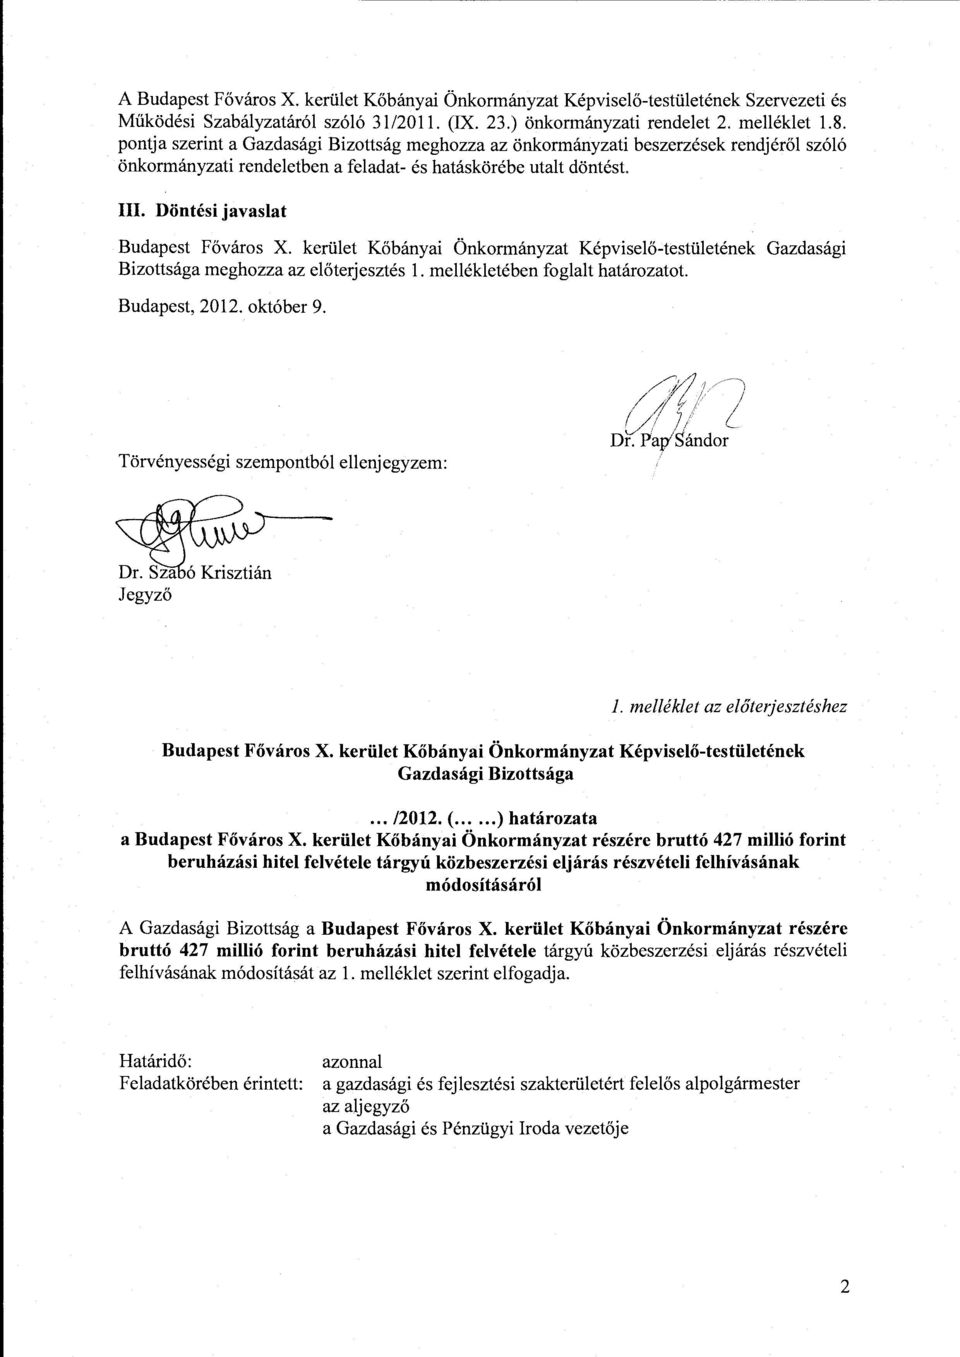 kerület Kőbányai Önkormányzat Képviselő-testületének Gazdasági Bizottsága meghozza az előterjesztés l. mellékletében foglalt határozatot. Budapest, 2012. október 9.